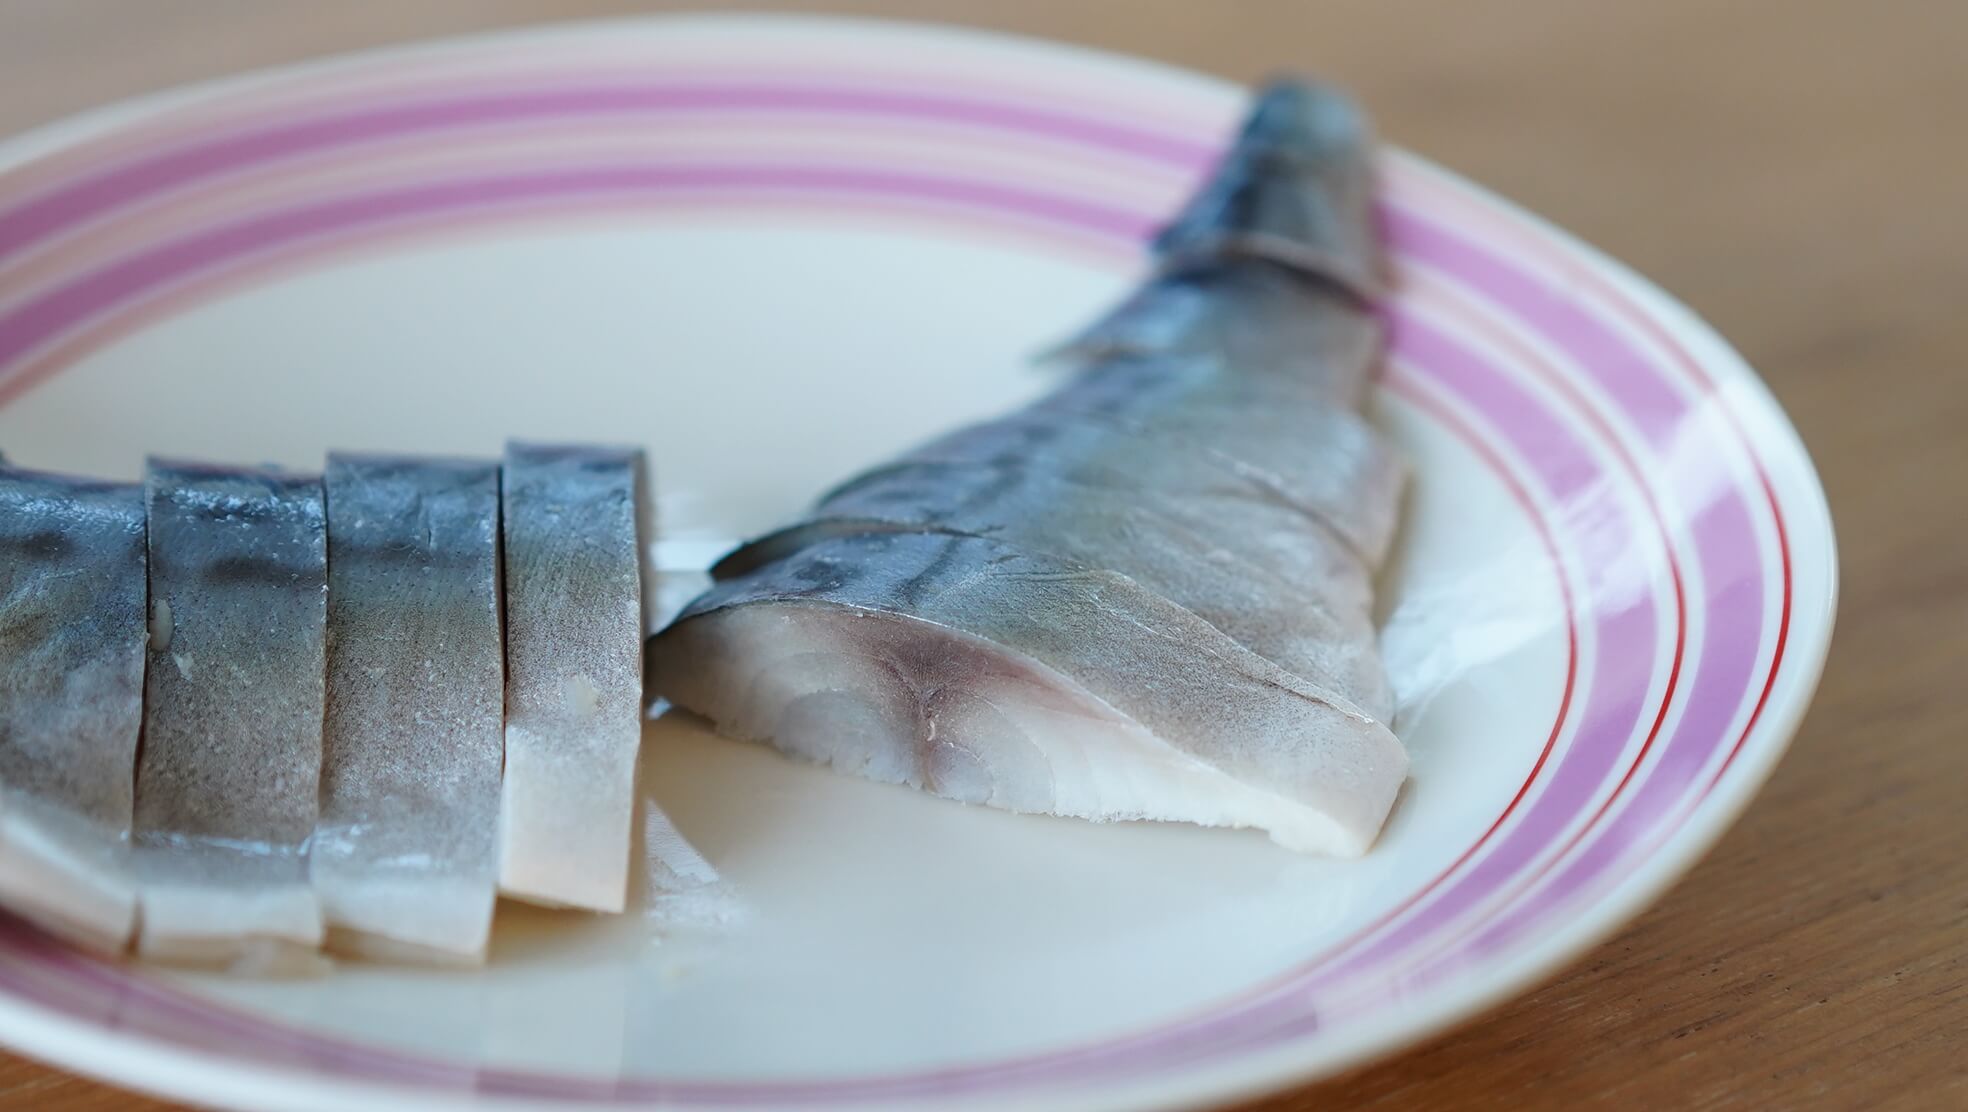 生協（コープ）の冷凍食品「国産素材・しめさば」の鯖の断面の写真